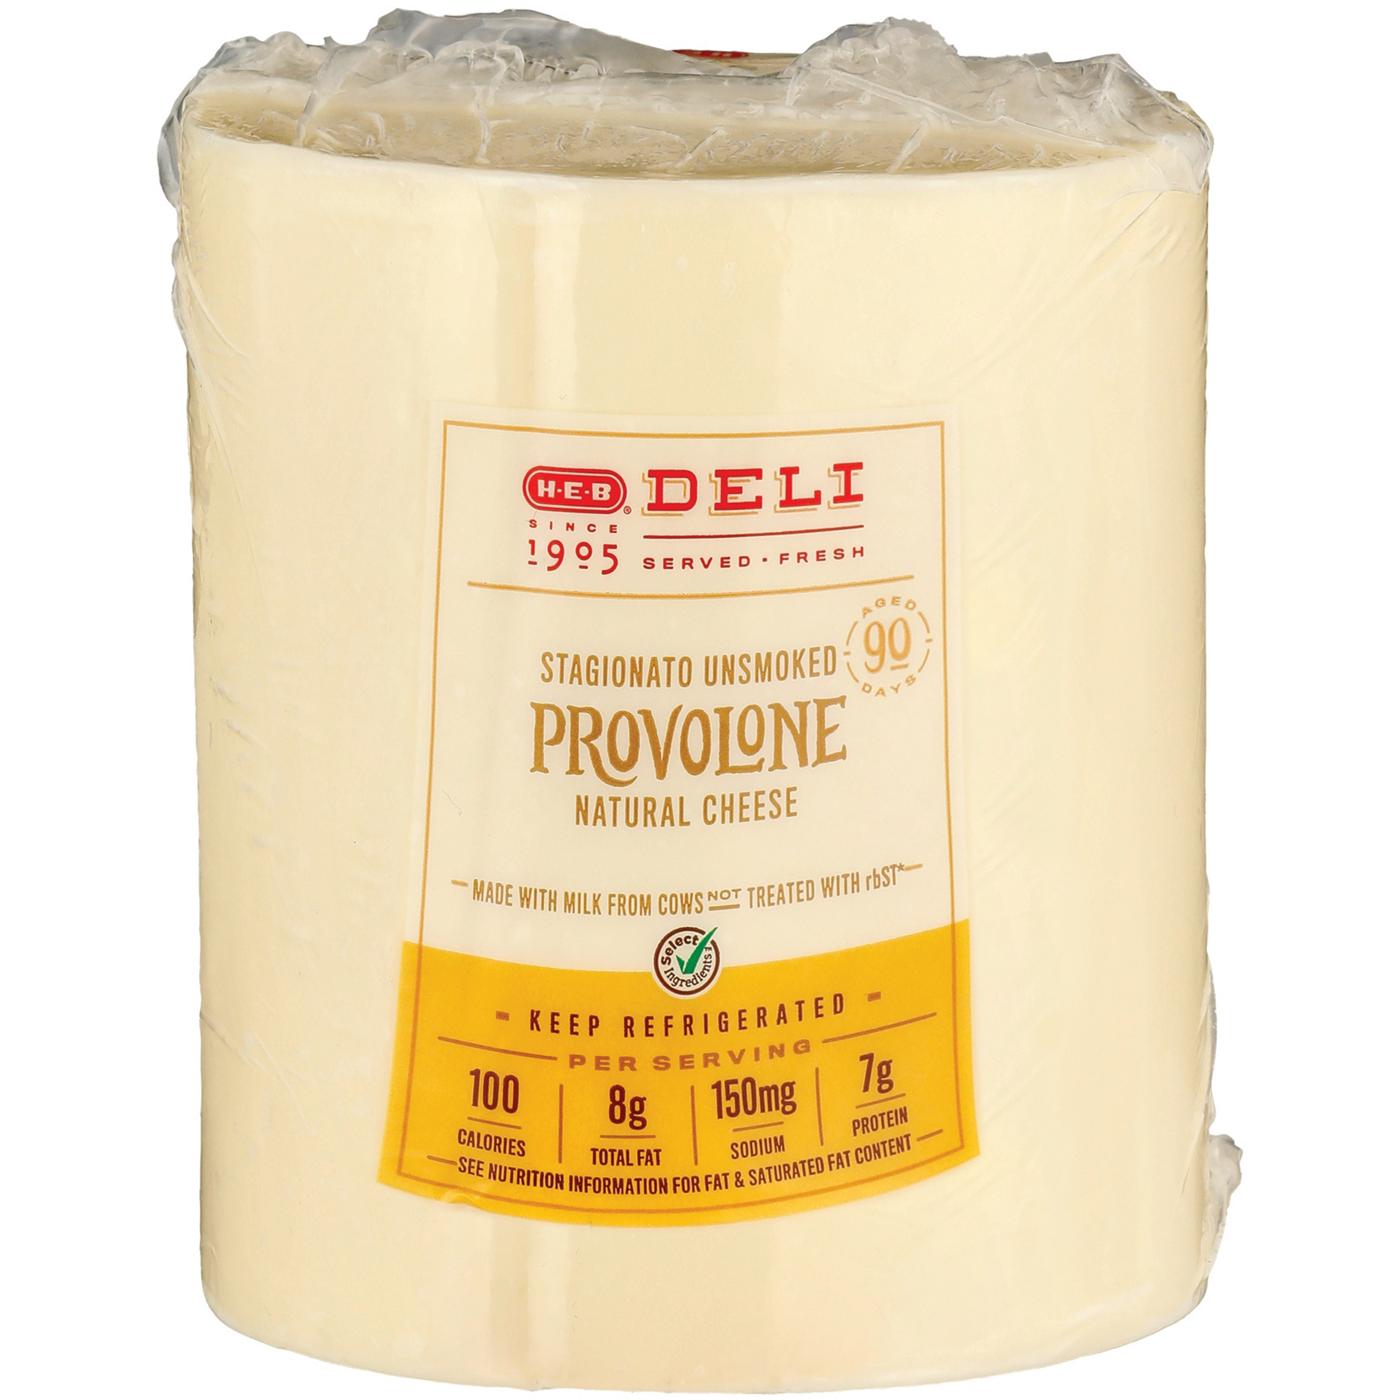 H-E-B Deli Stagionato Unsmoked Provolone Cheese, Custom Sliced; image 2 of 3